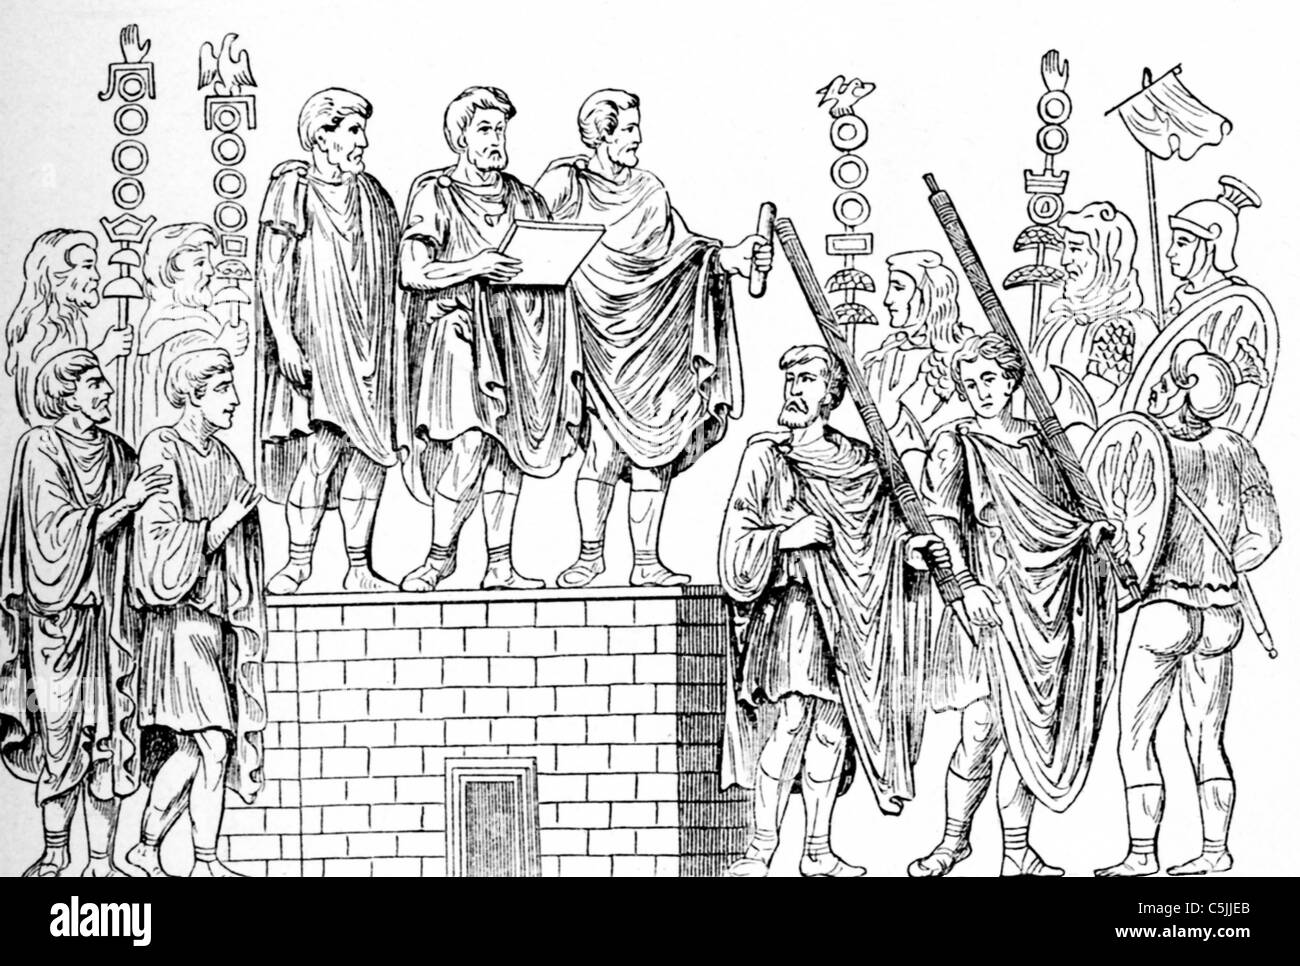 Das römische Militär hatte verschiedene Auszeichnungen, dass Offiziere und Herrscher, die für eine Vielzahl von Gründen und Leistungen vorgestellt. Stockfoto